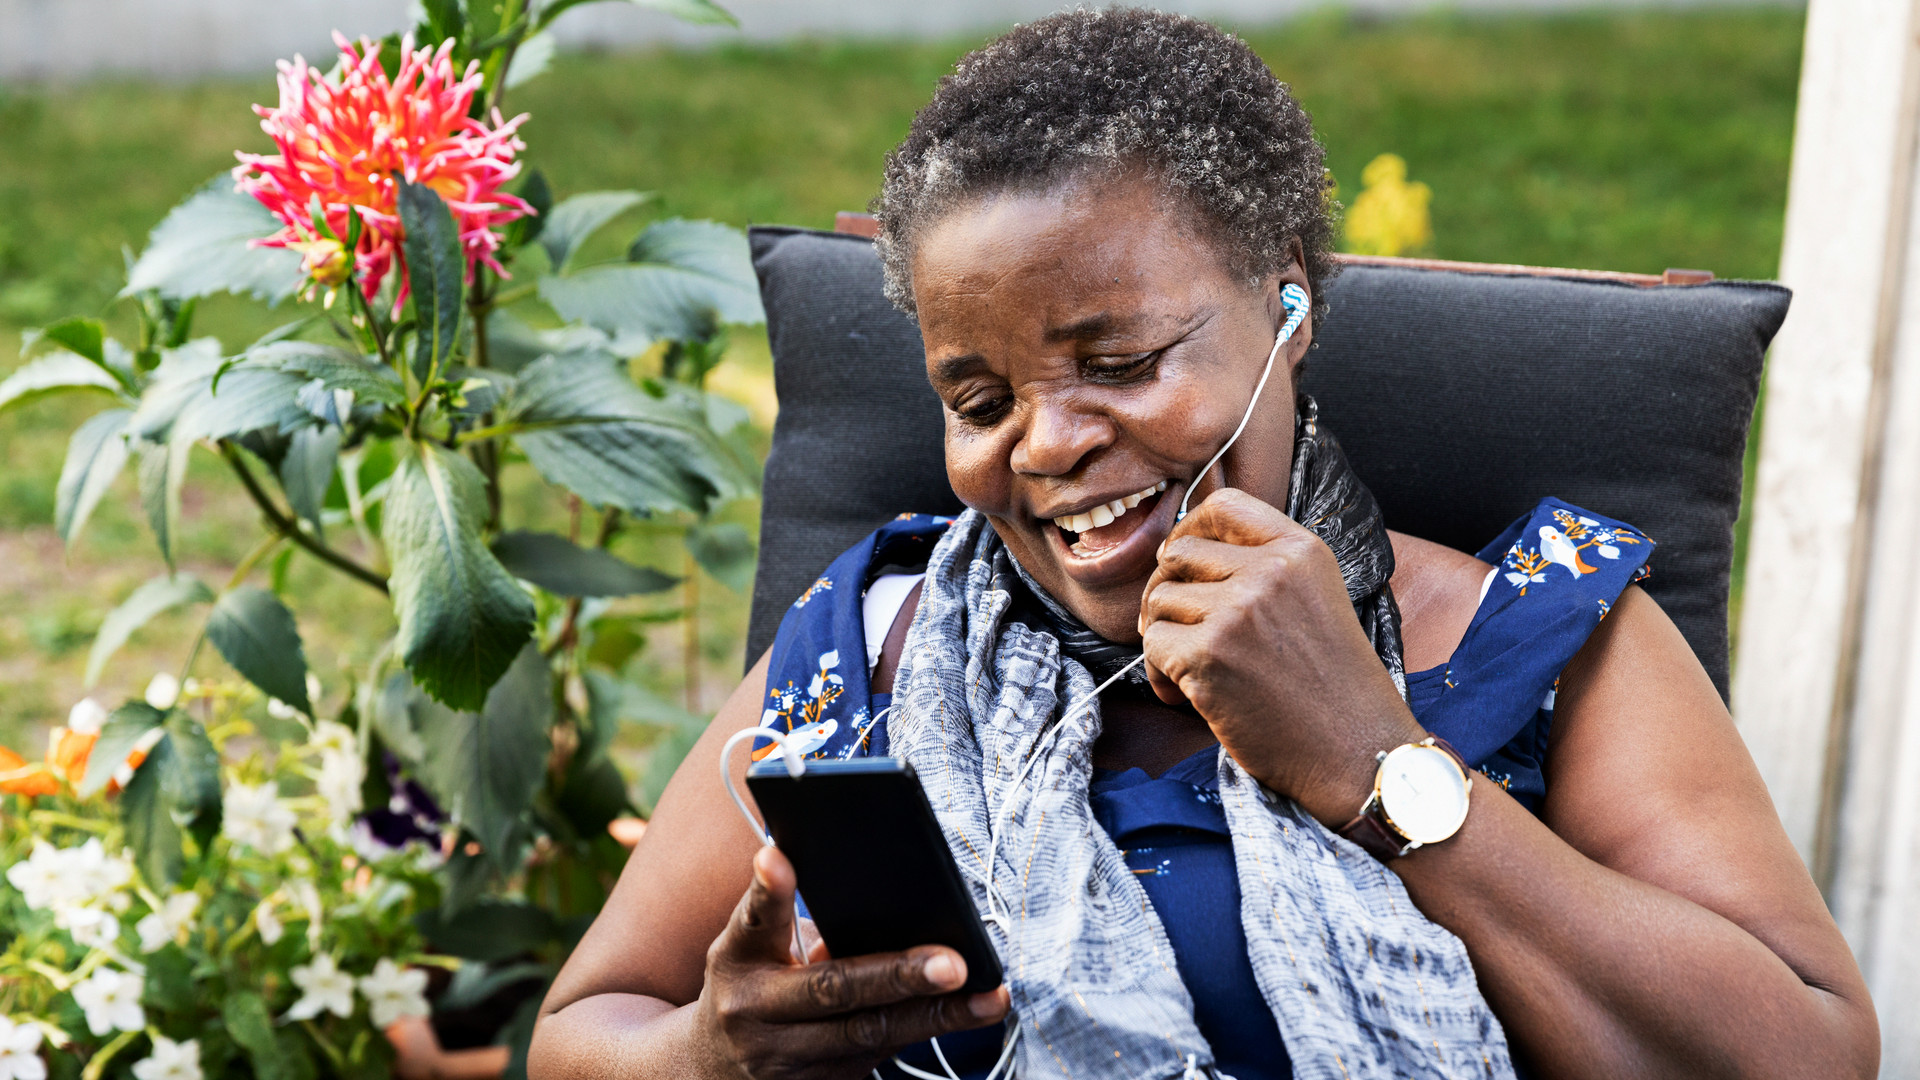 kvinna från Tanzania pratar i telefon i trädgård